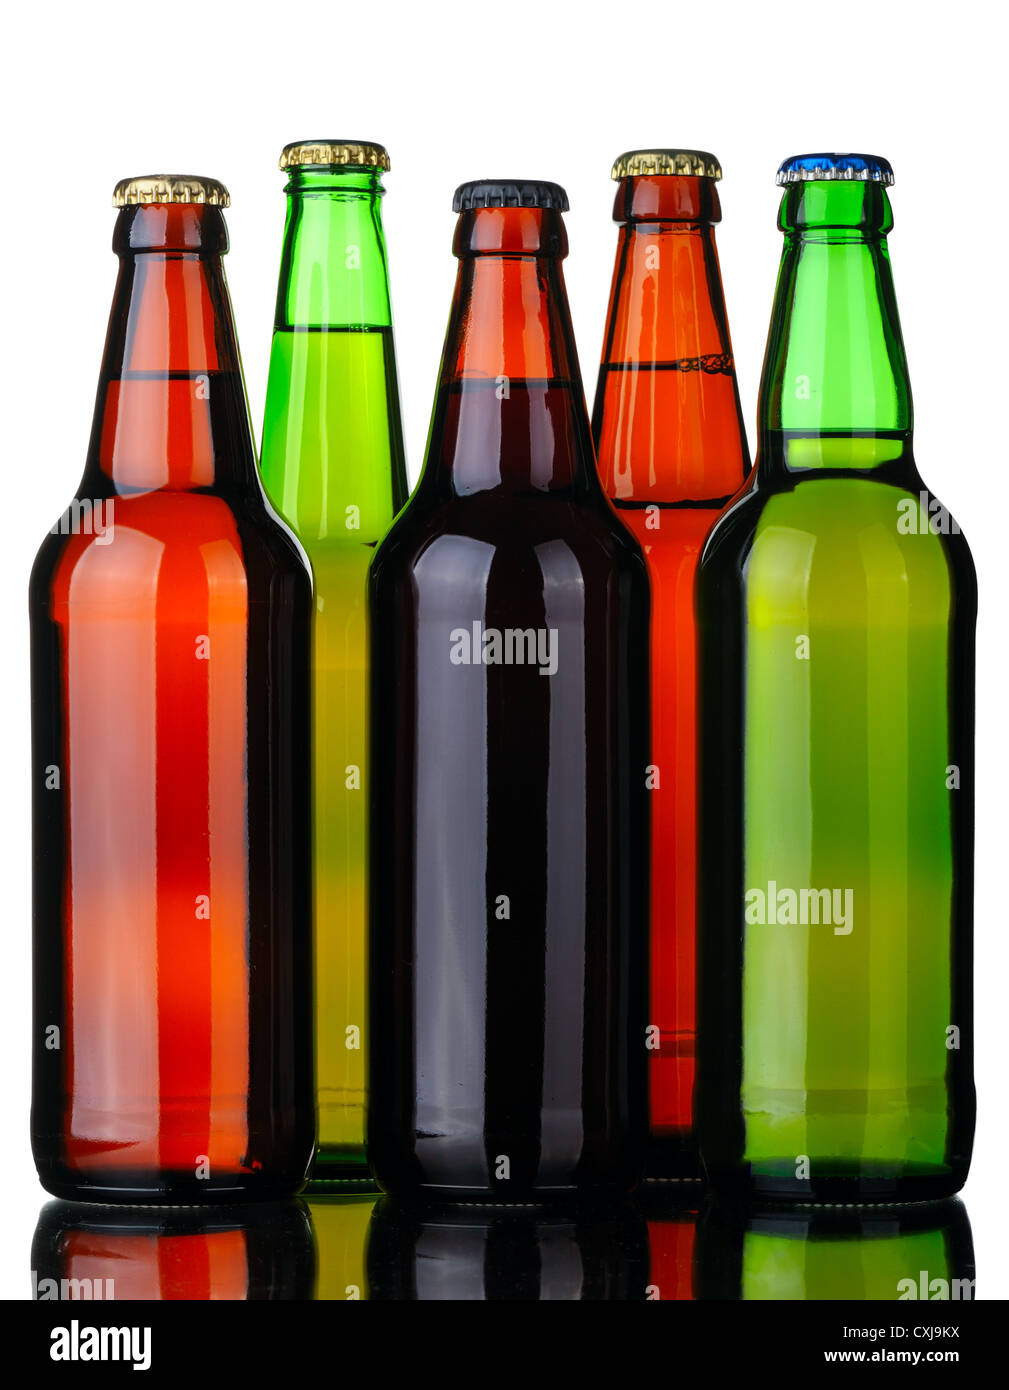 Five bottles of beer Stock Photo